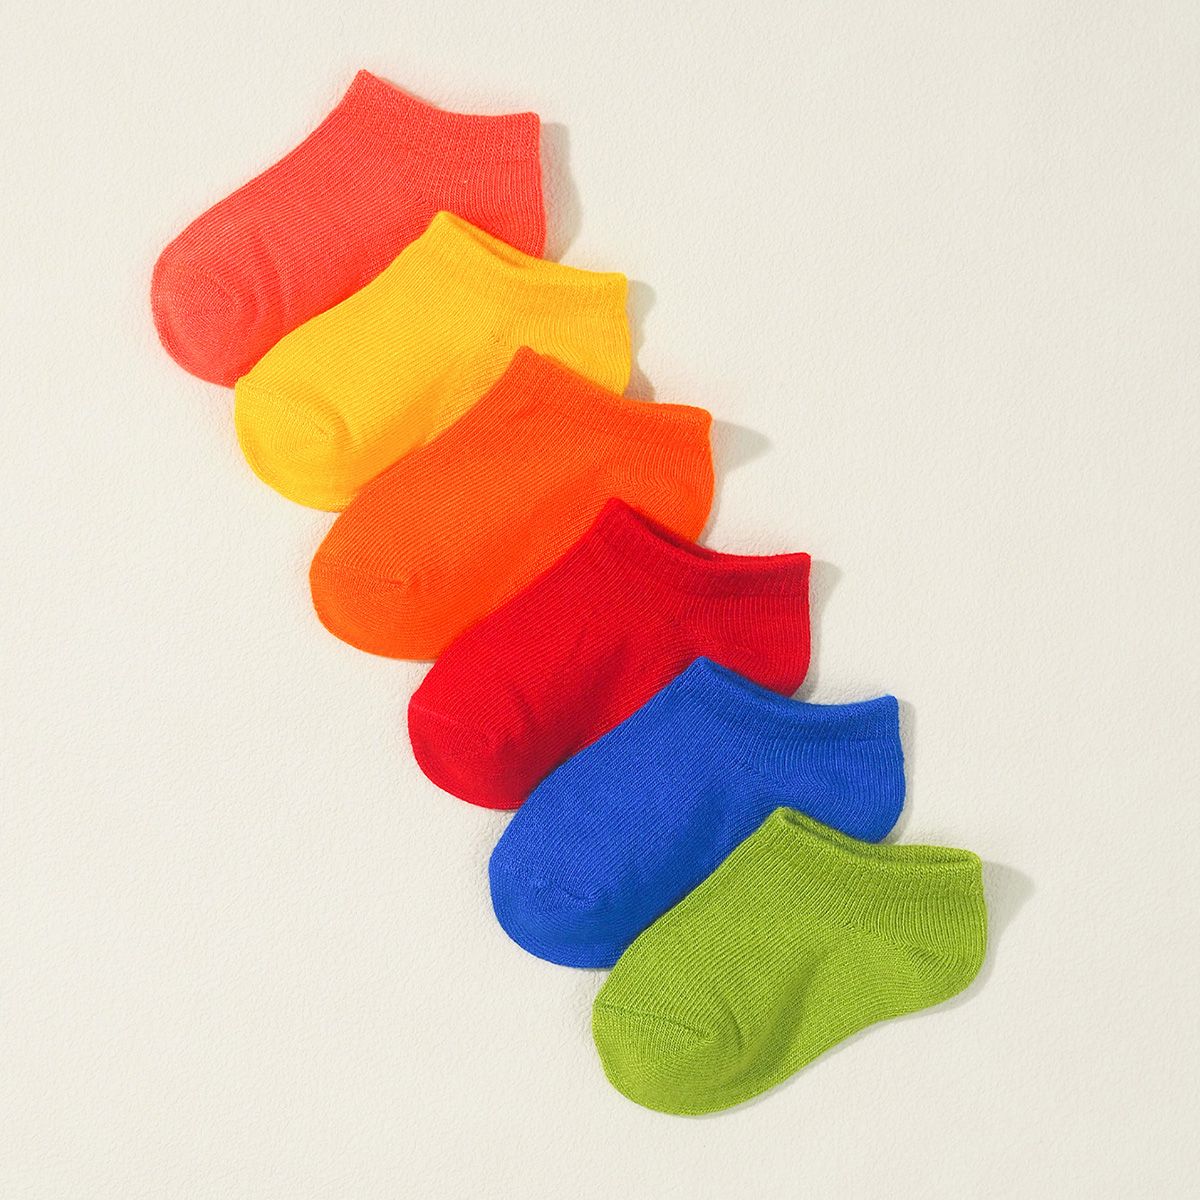 嬰兒男女兩用休閒 6 件裝彩色竹纖維襪子